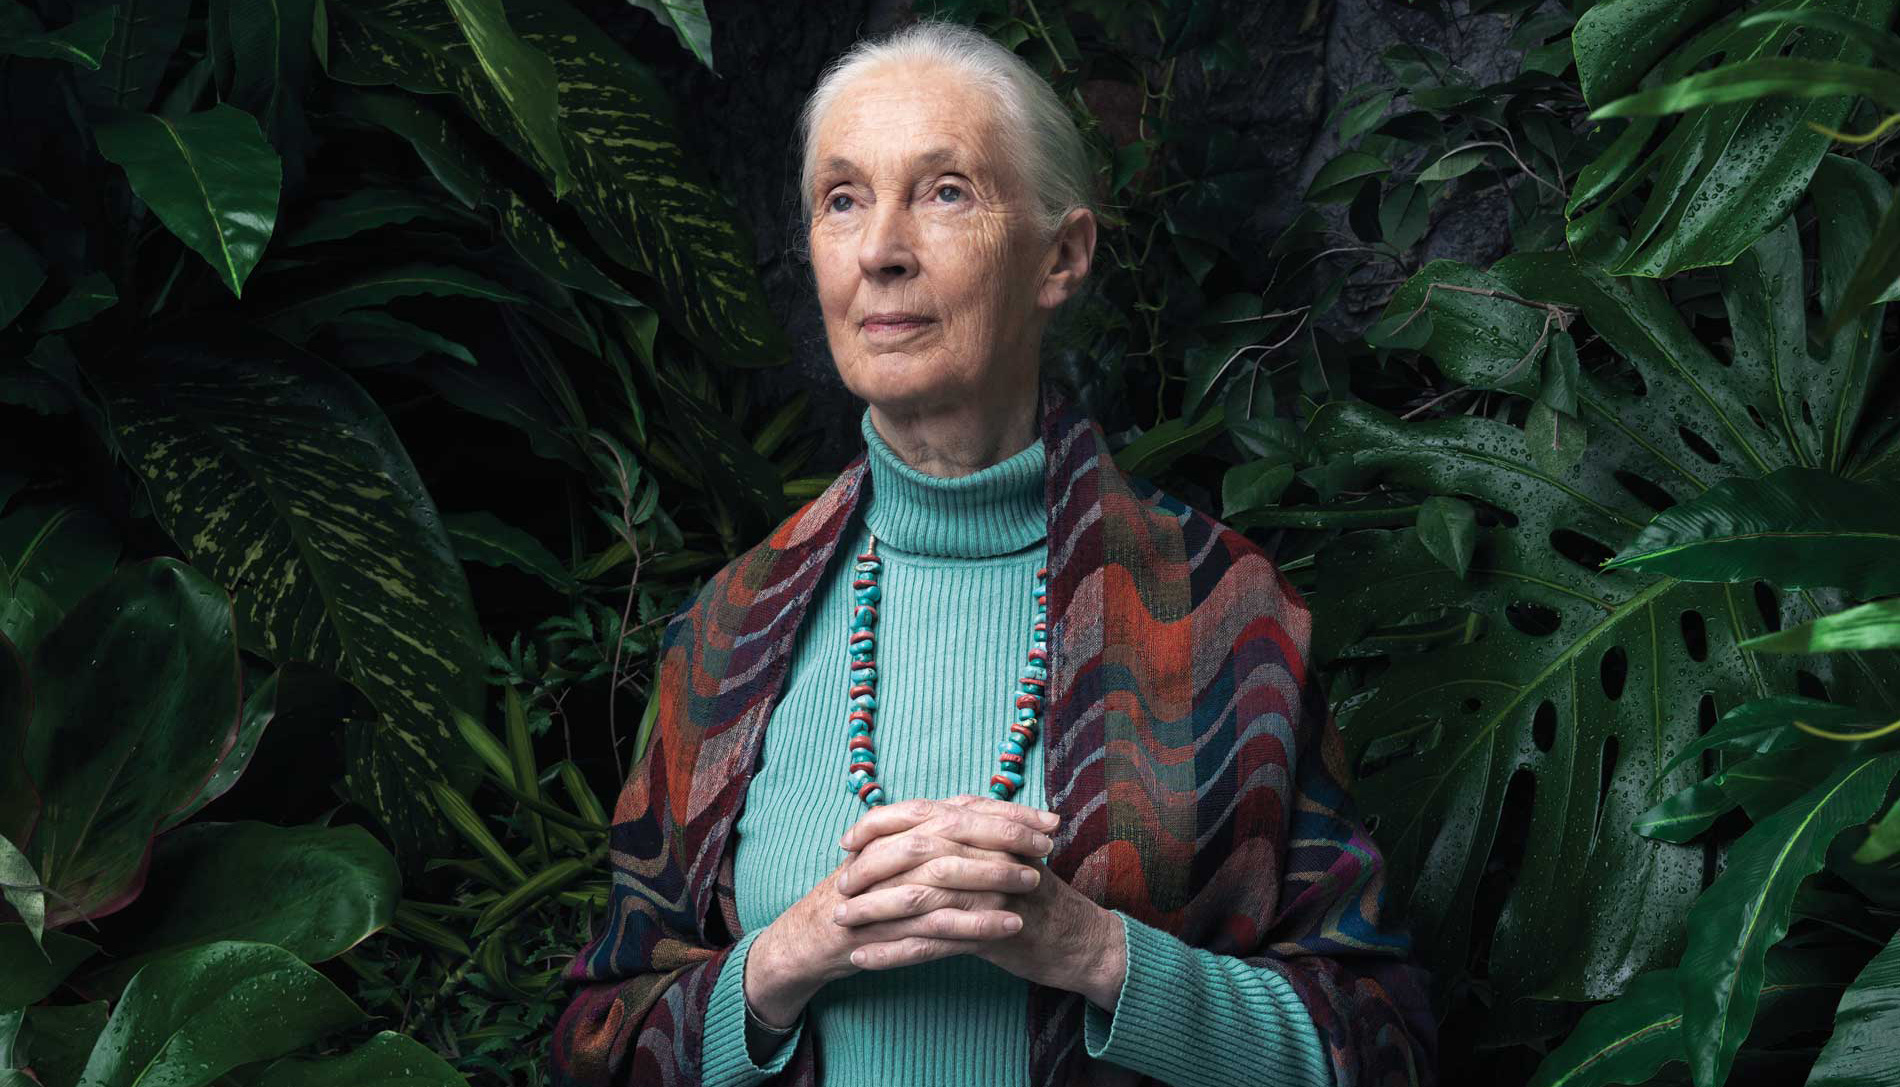 Português) Jane Goodall Diz que Devemos Deixar os Animais em Paz.